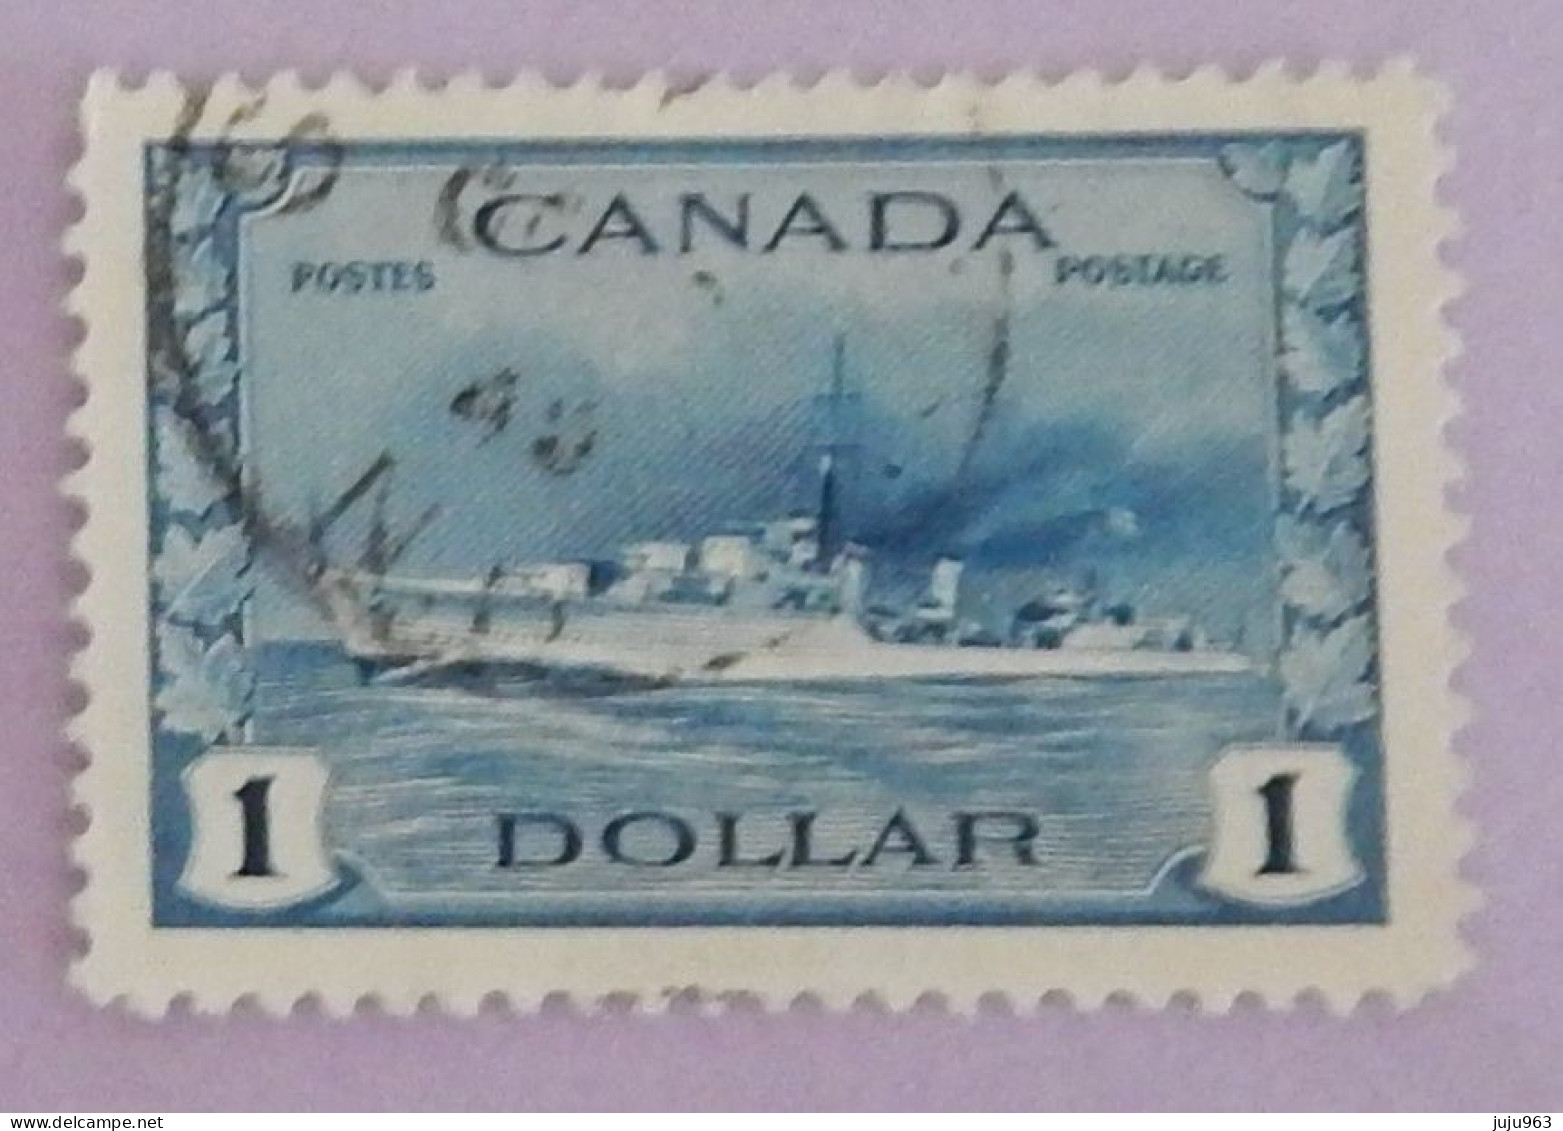 CANADA YT 218 OBLITÉRÉ "DESTROYER IROQUOIS" ANNÉES 1943/1948 - Usati